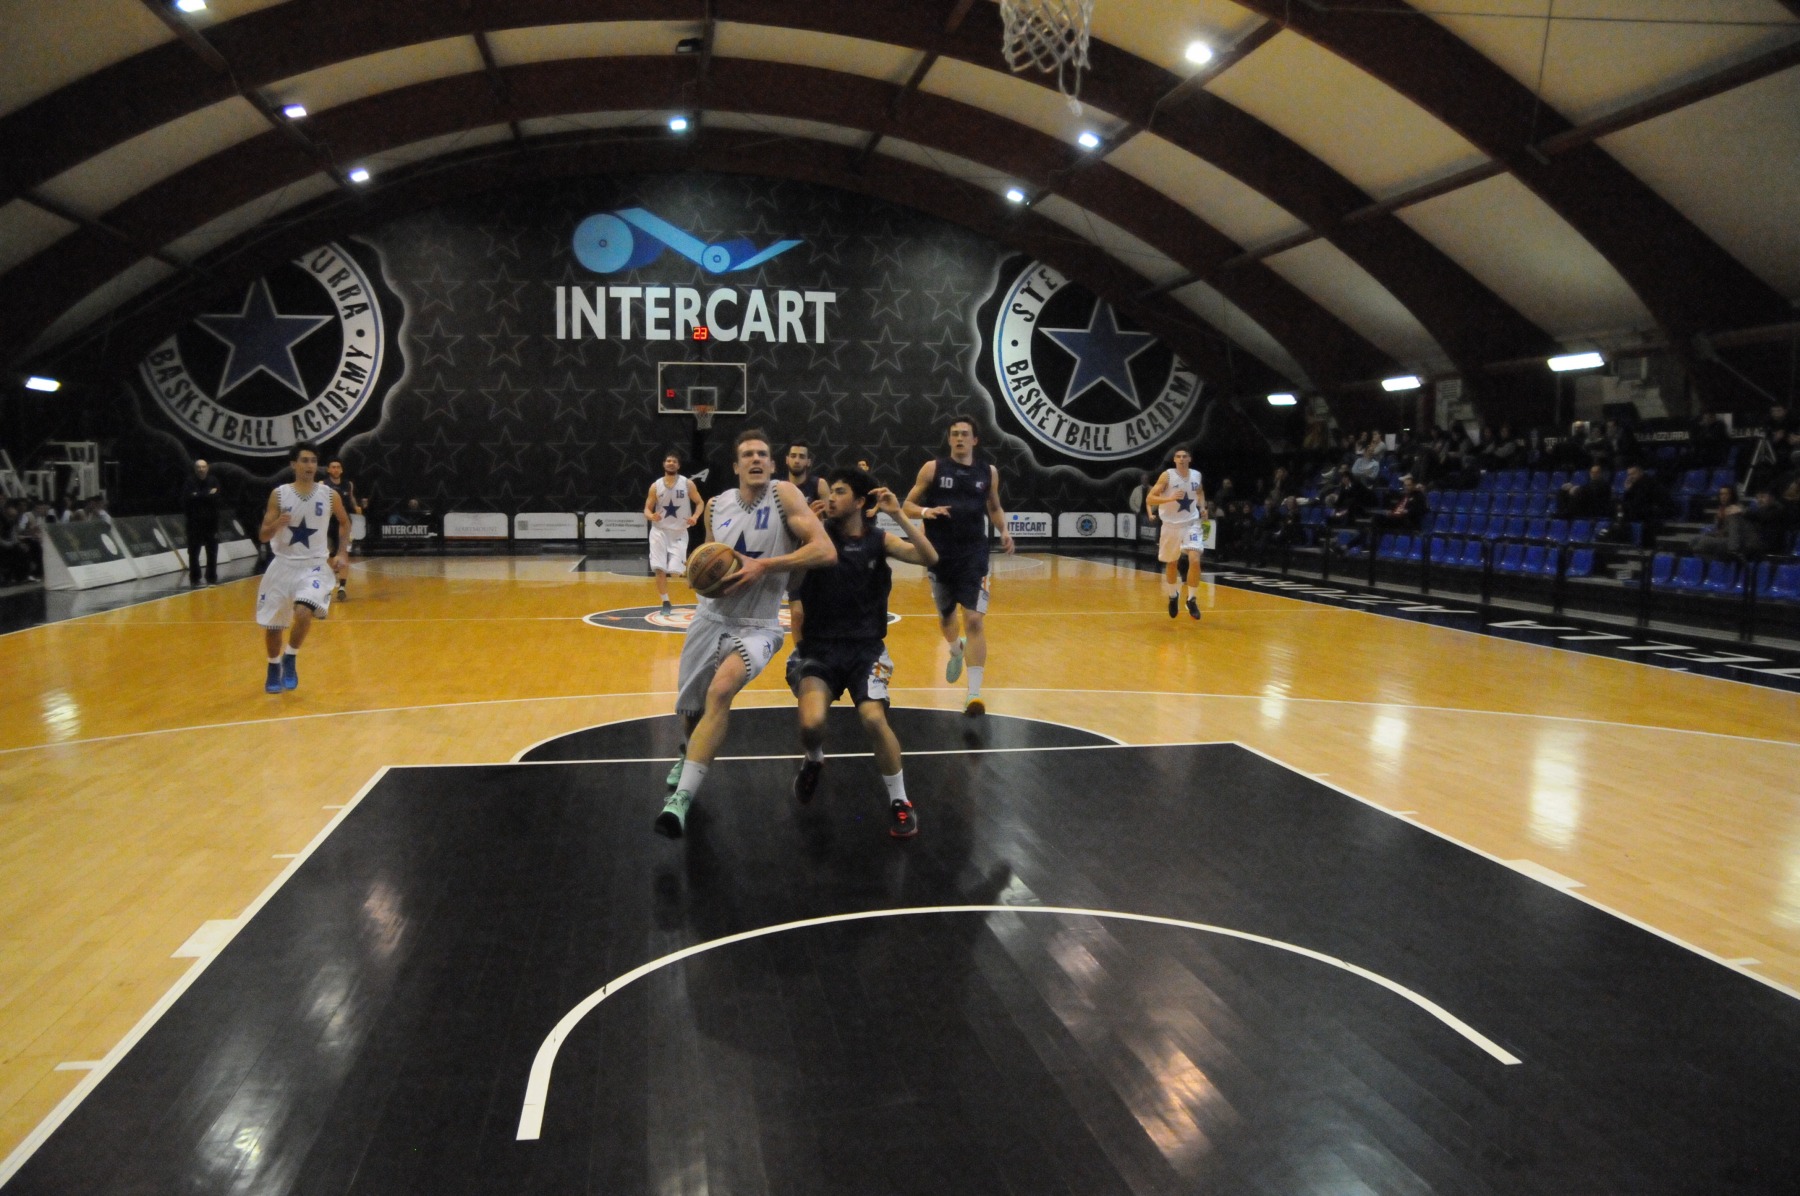 A Valdiceppo Basket Academy